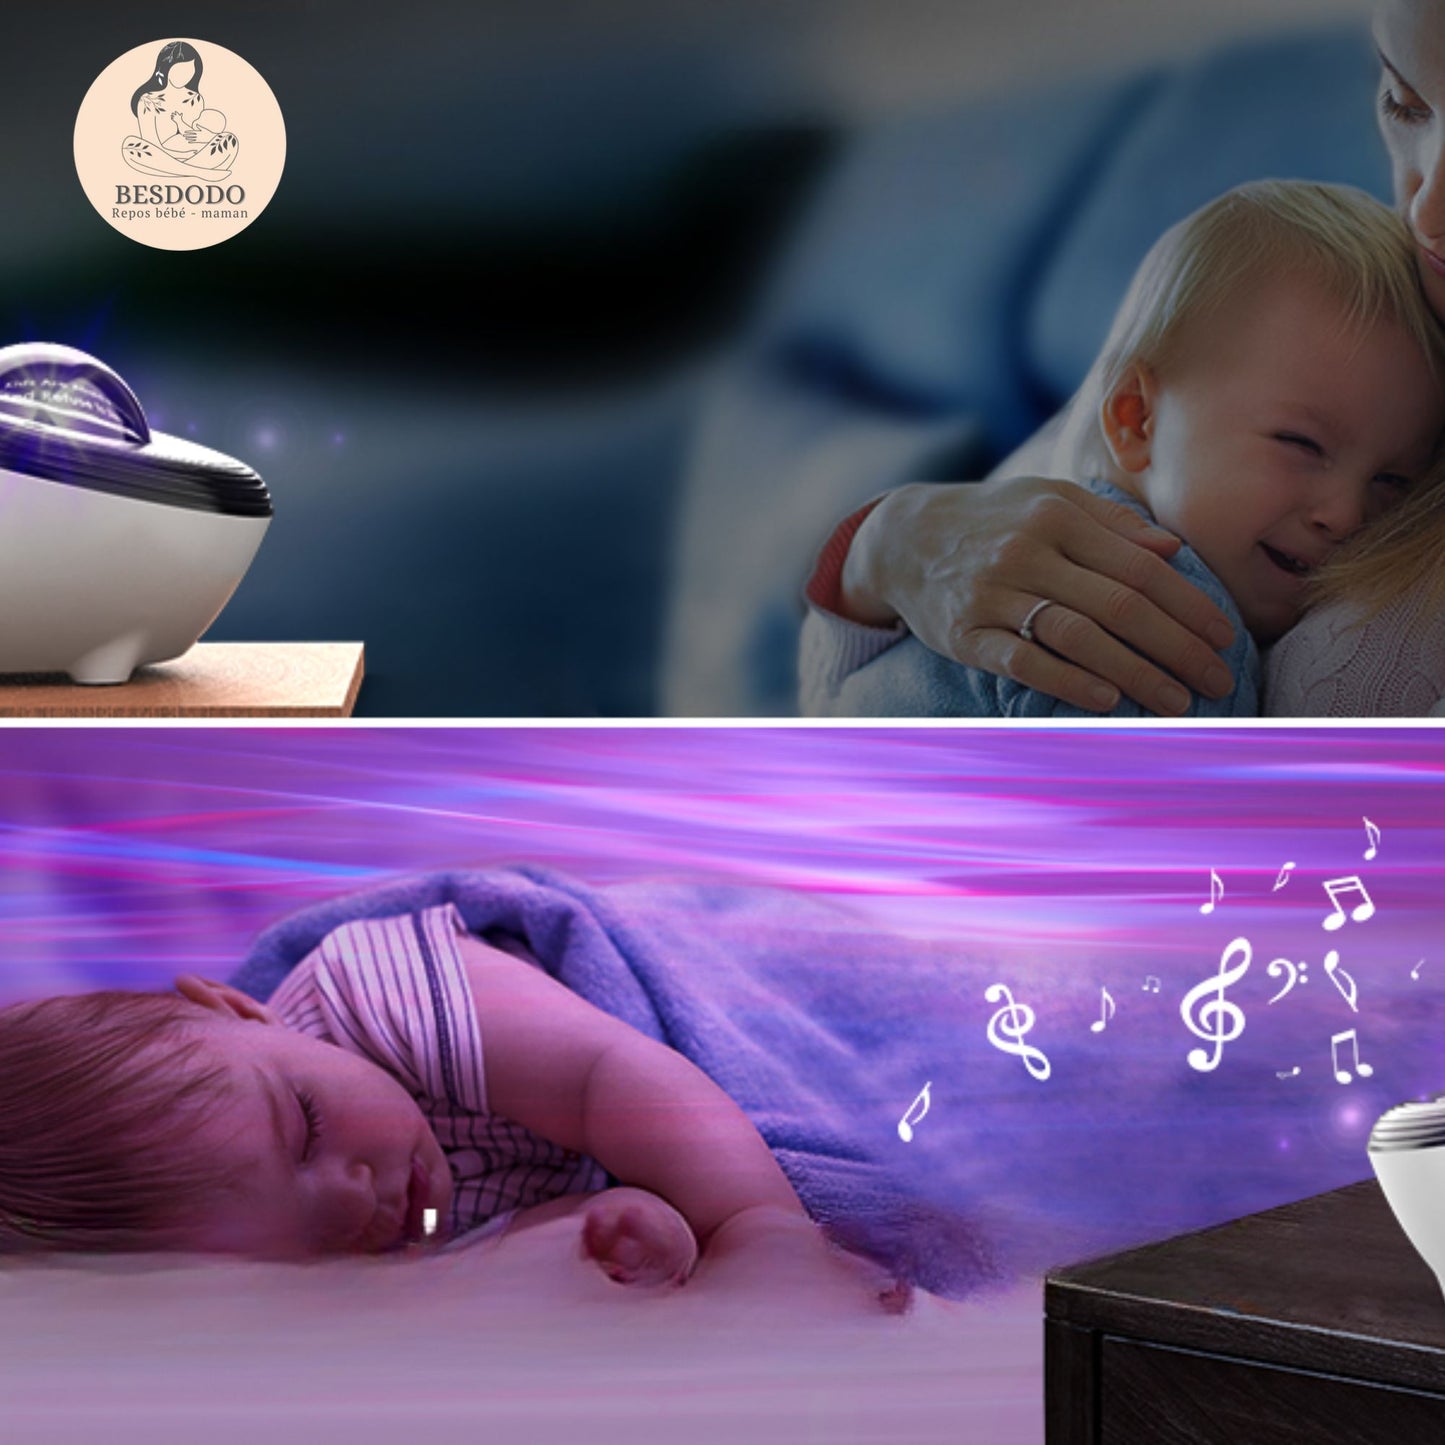 Vveilleuse-bebe-projection-plafond-aide-endormissement